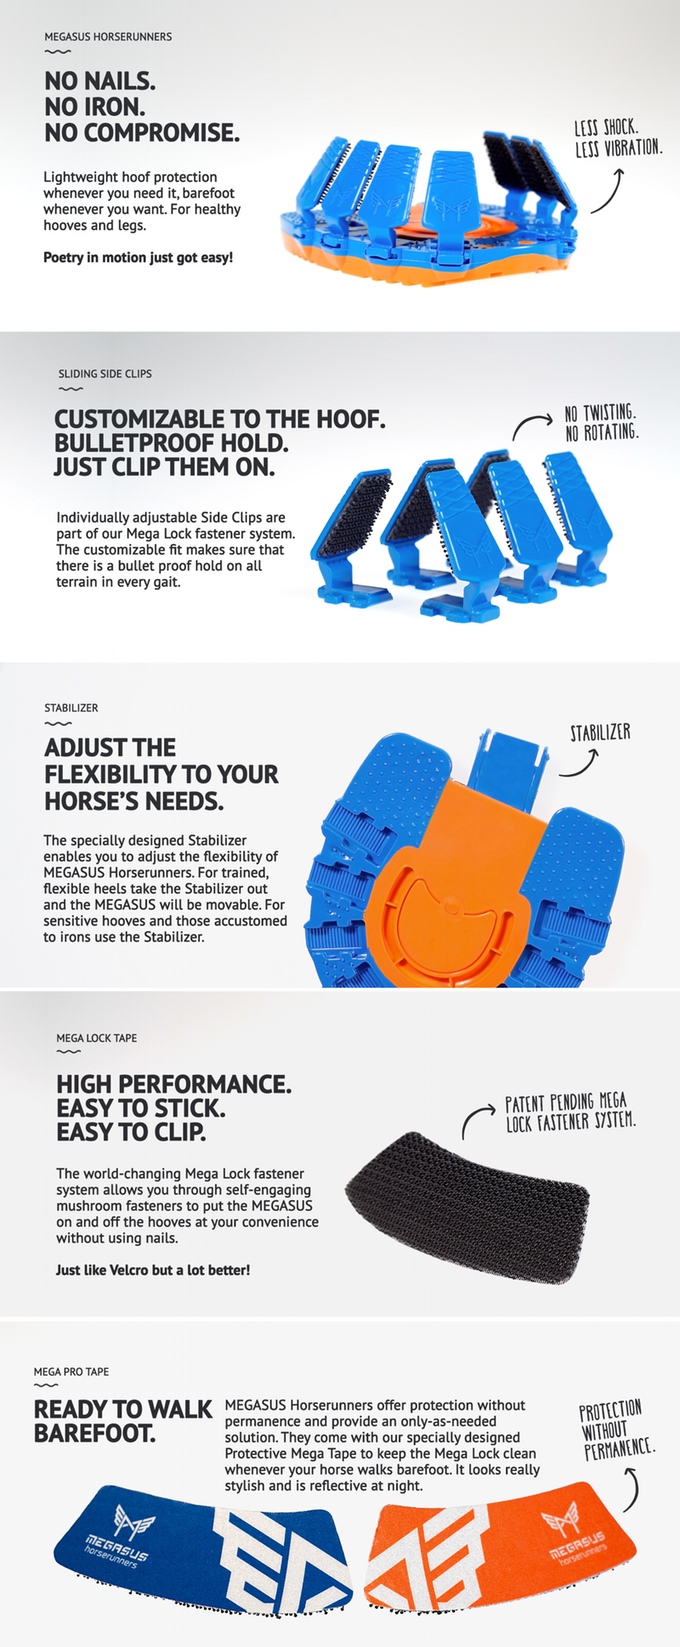 Бизнес-идея: обувь для лошадей